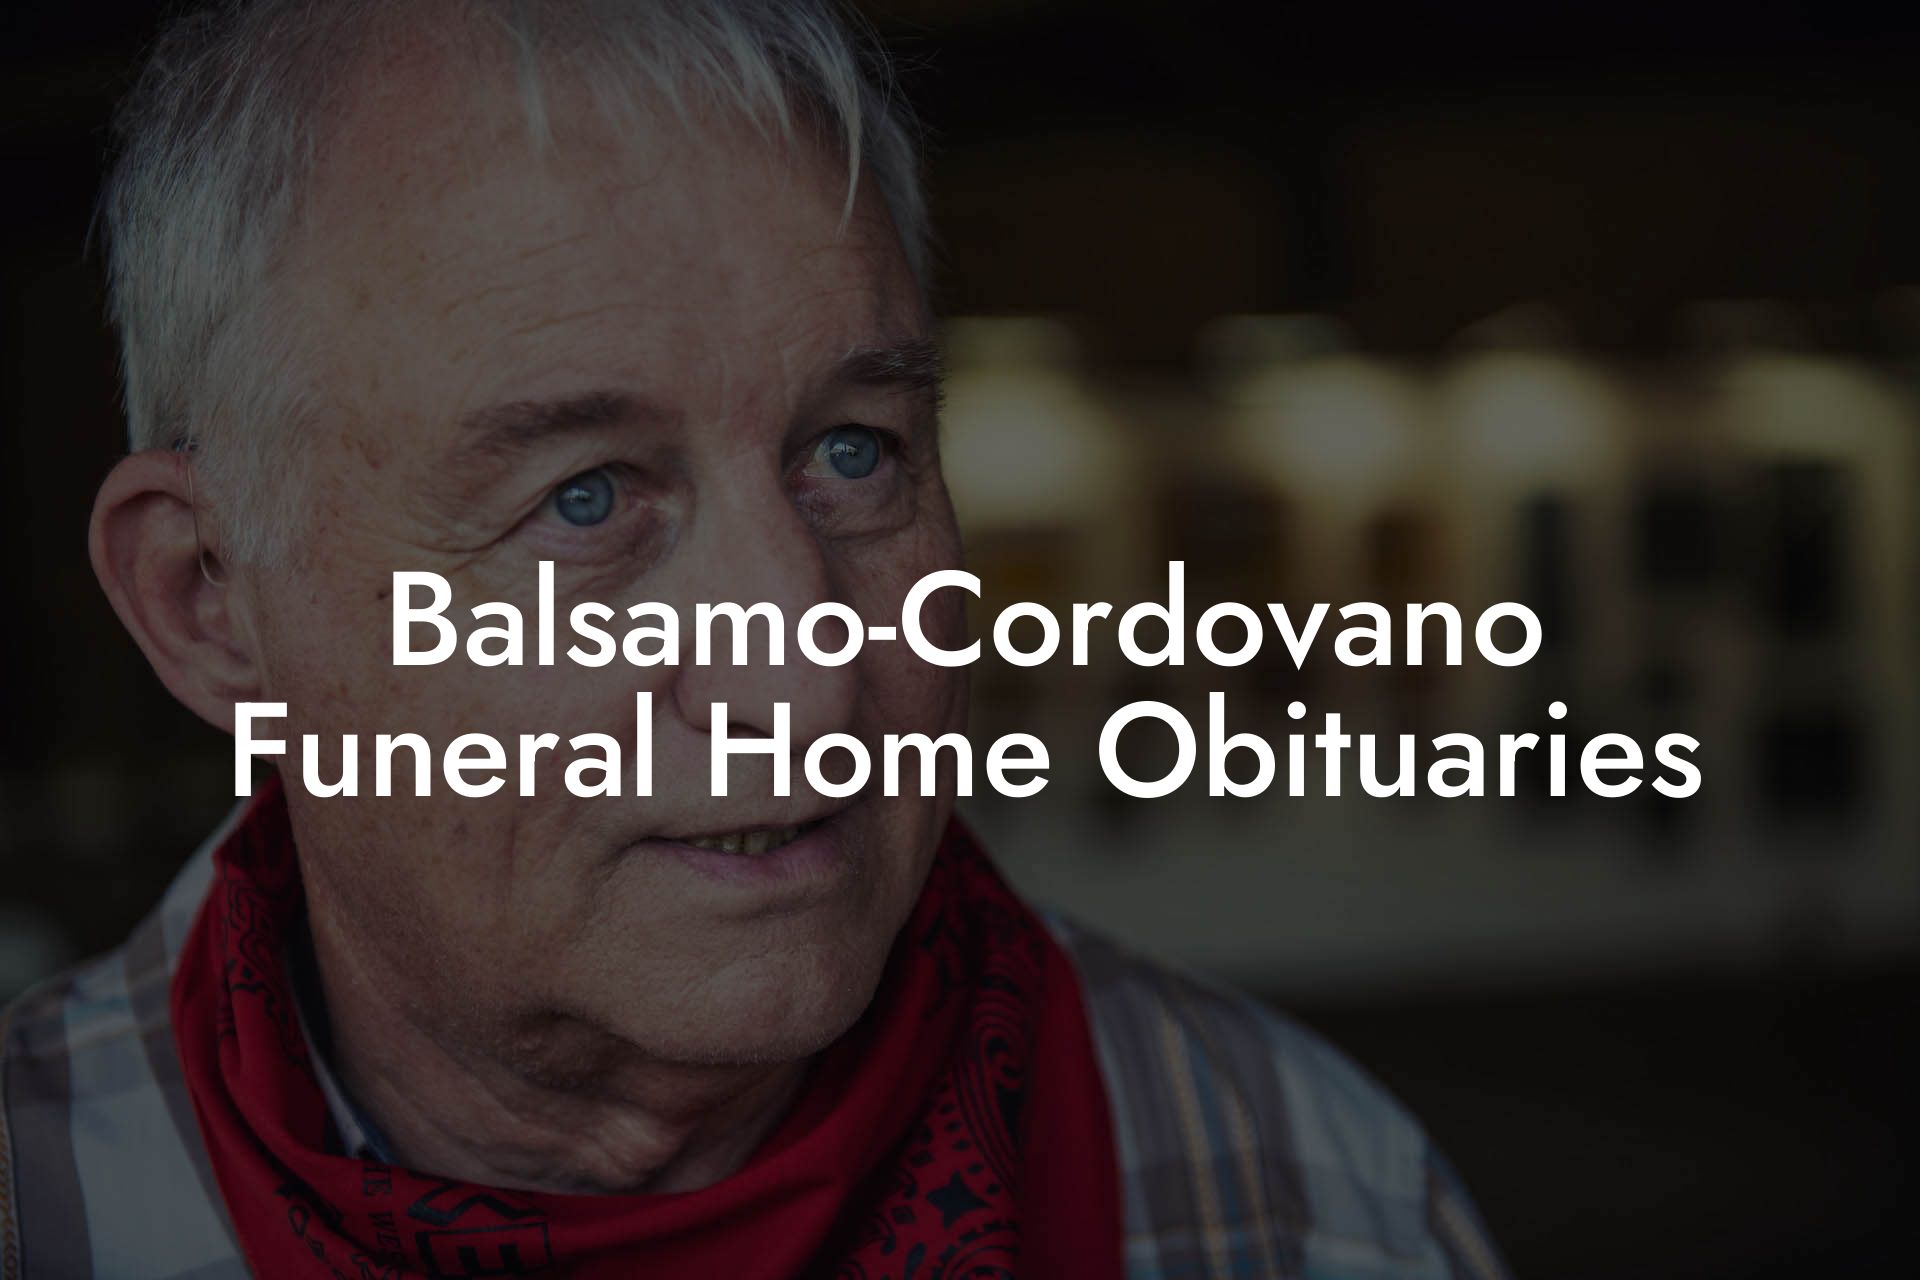 Balsamo-Cordovano Funeral Home Obituaries